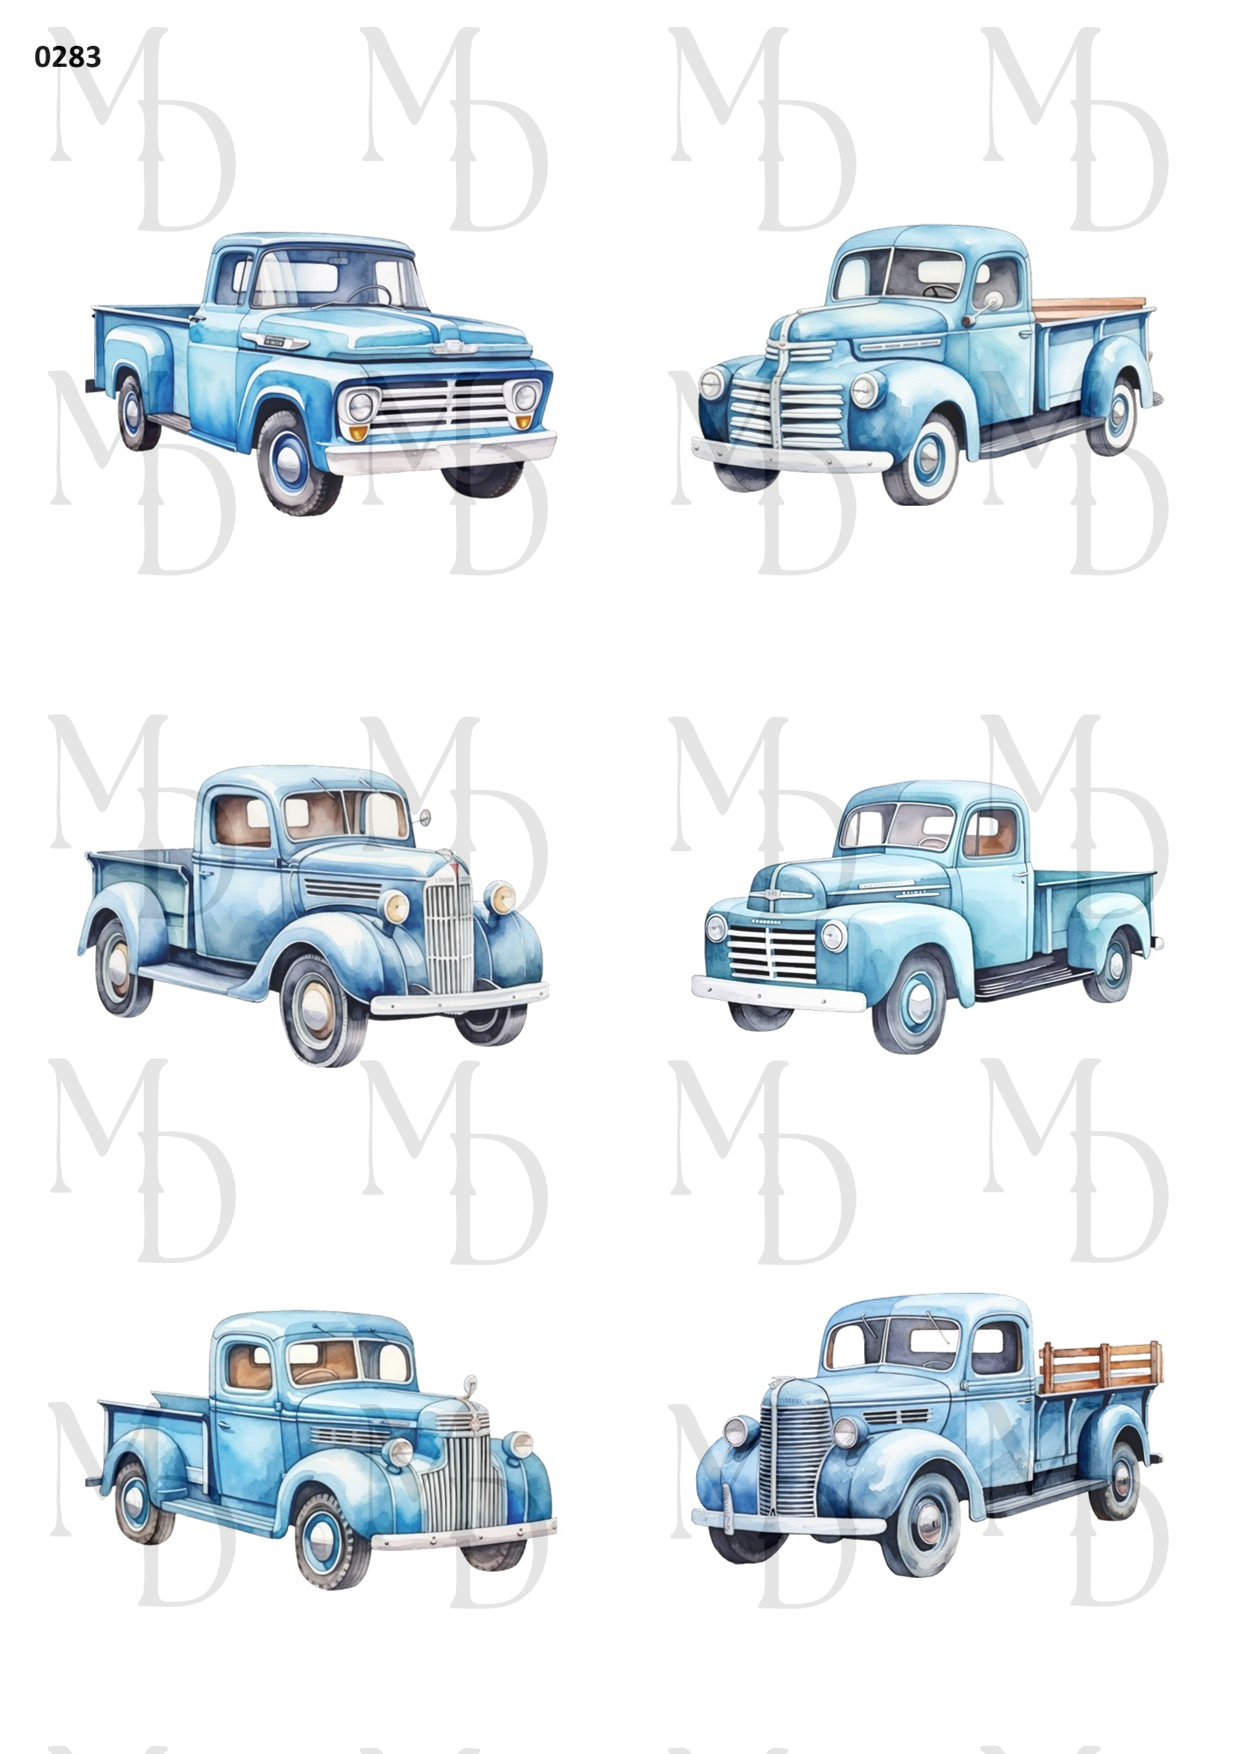 0283-MD Blue trucks